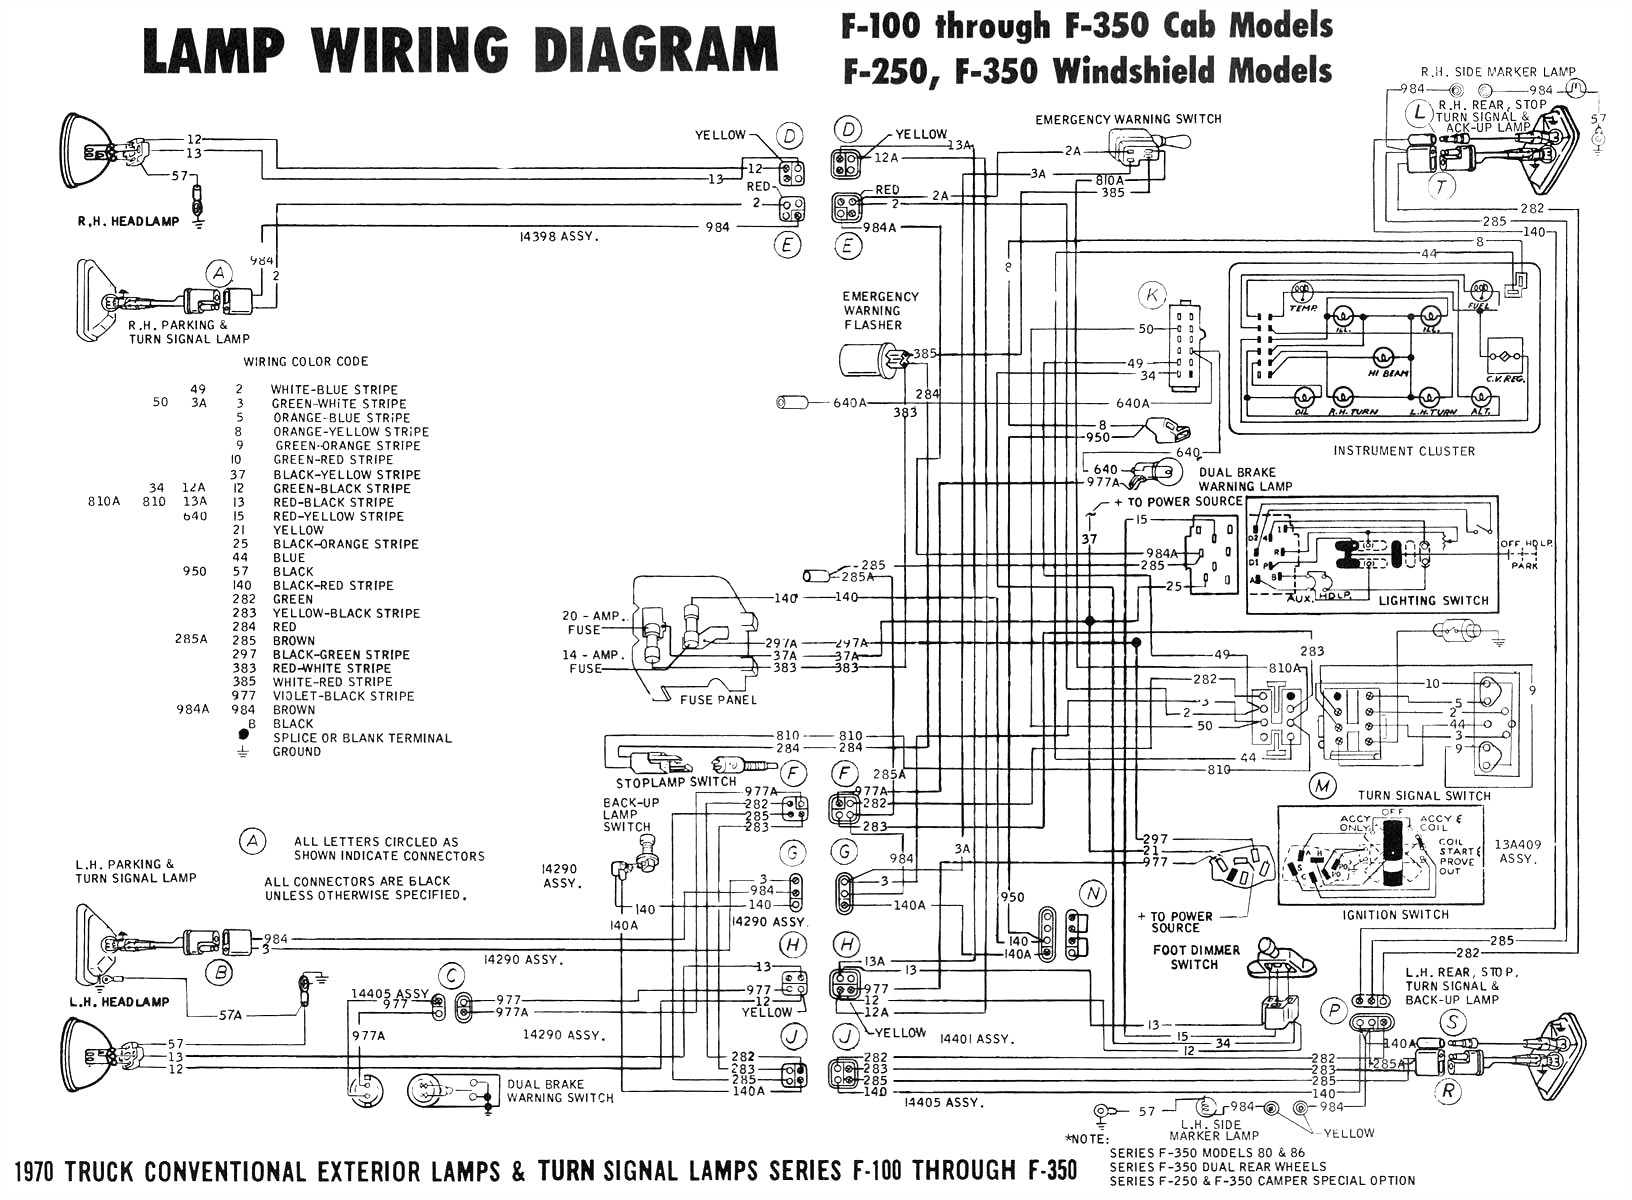 oshkosh mb amp gauge wiring diagram wiring diagrams schema 1987 ford f600 wiring diagram wiring diagram